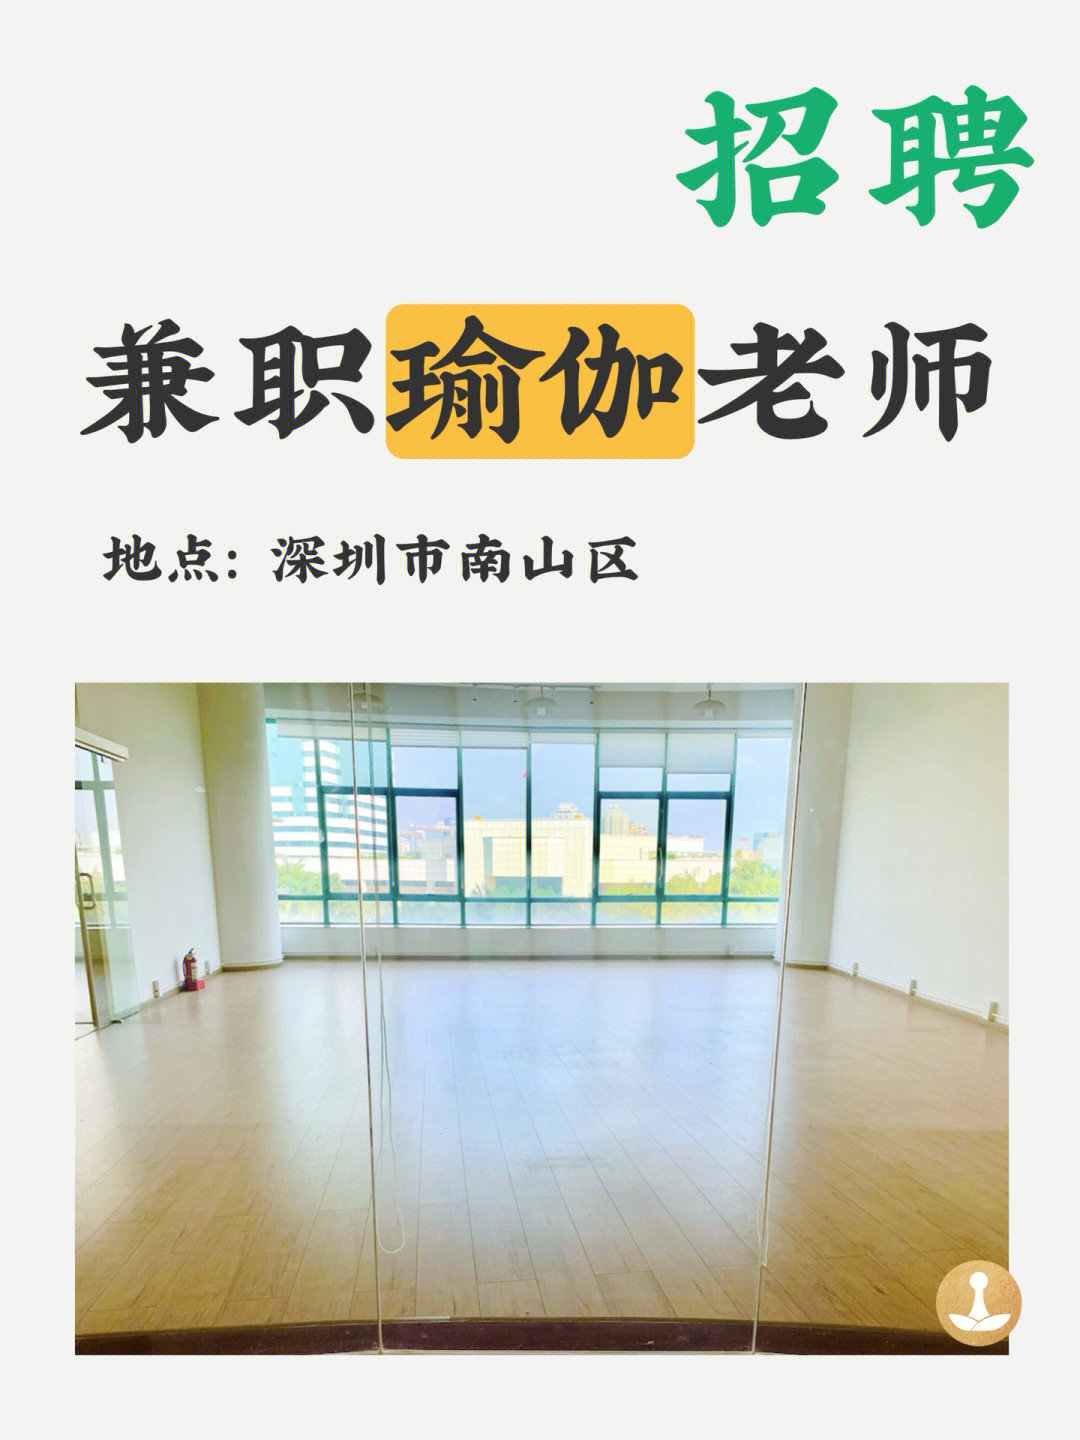 招聘线下瑜伽老师地点在深圳市南山区